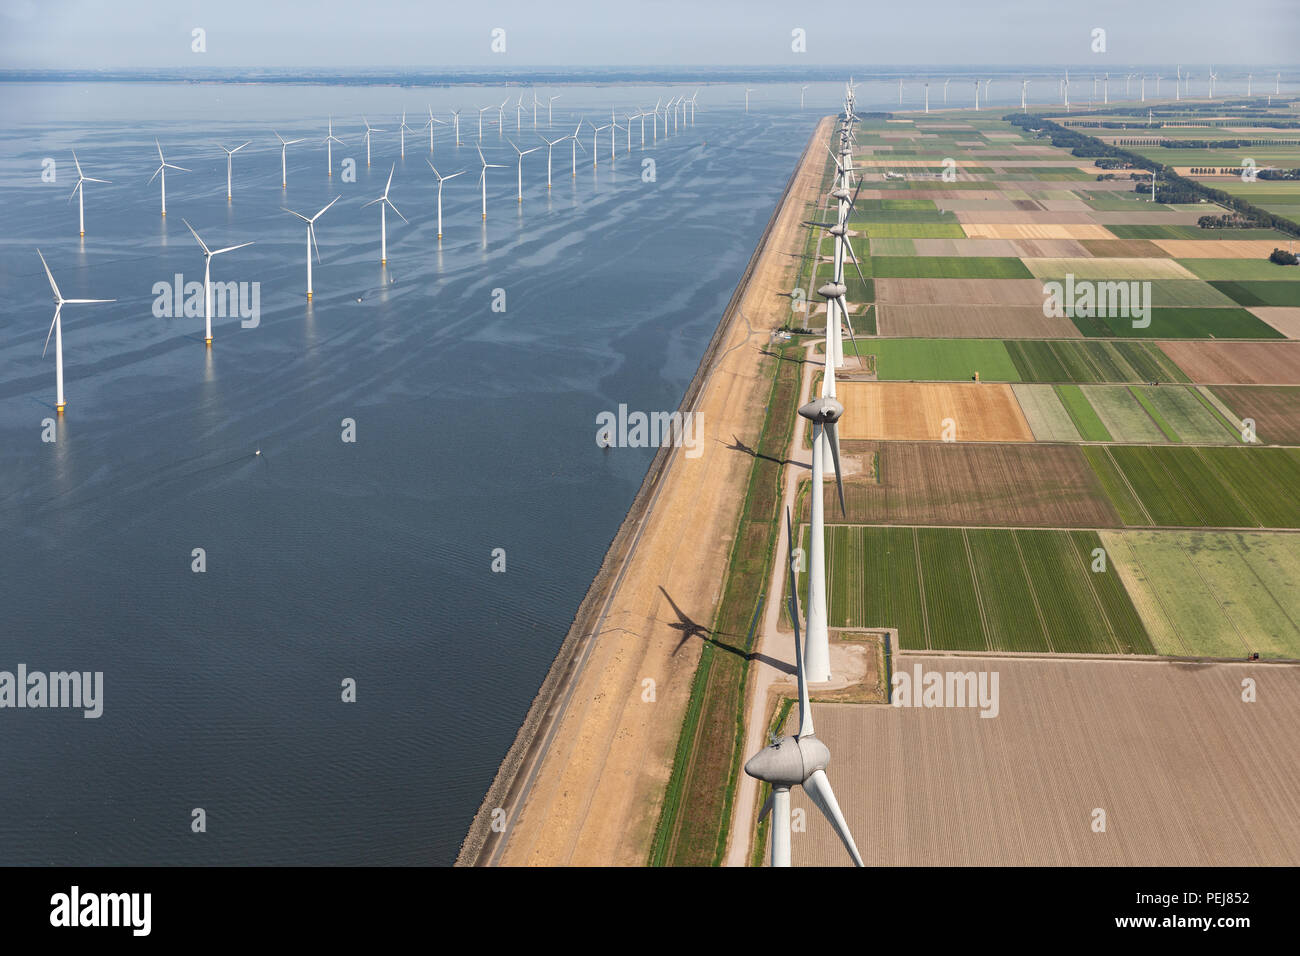 Vue aérienne paysage hollandais avec des éoliennes en mer le long de la côte Banque D'Images